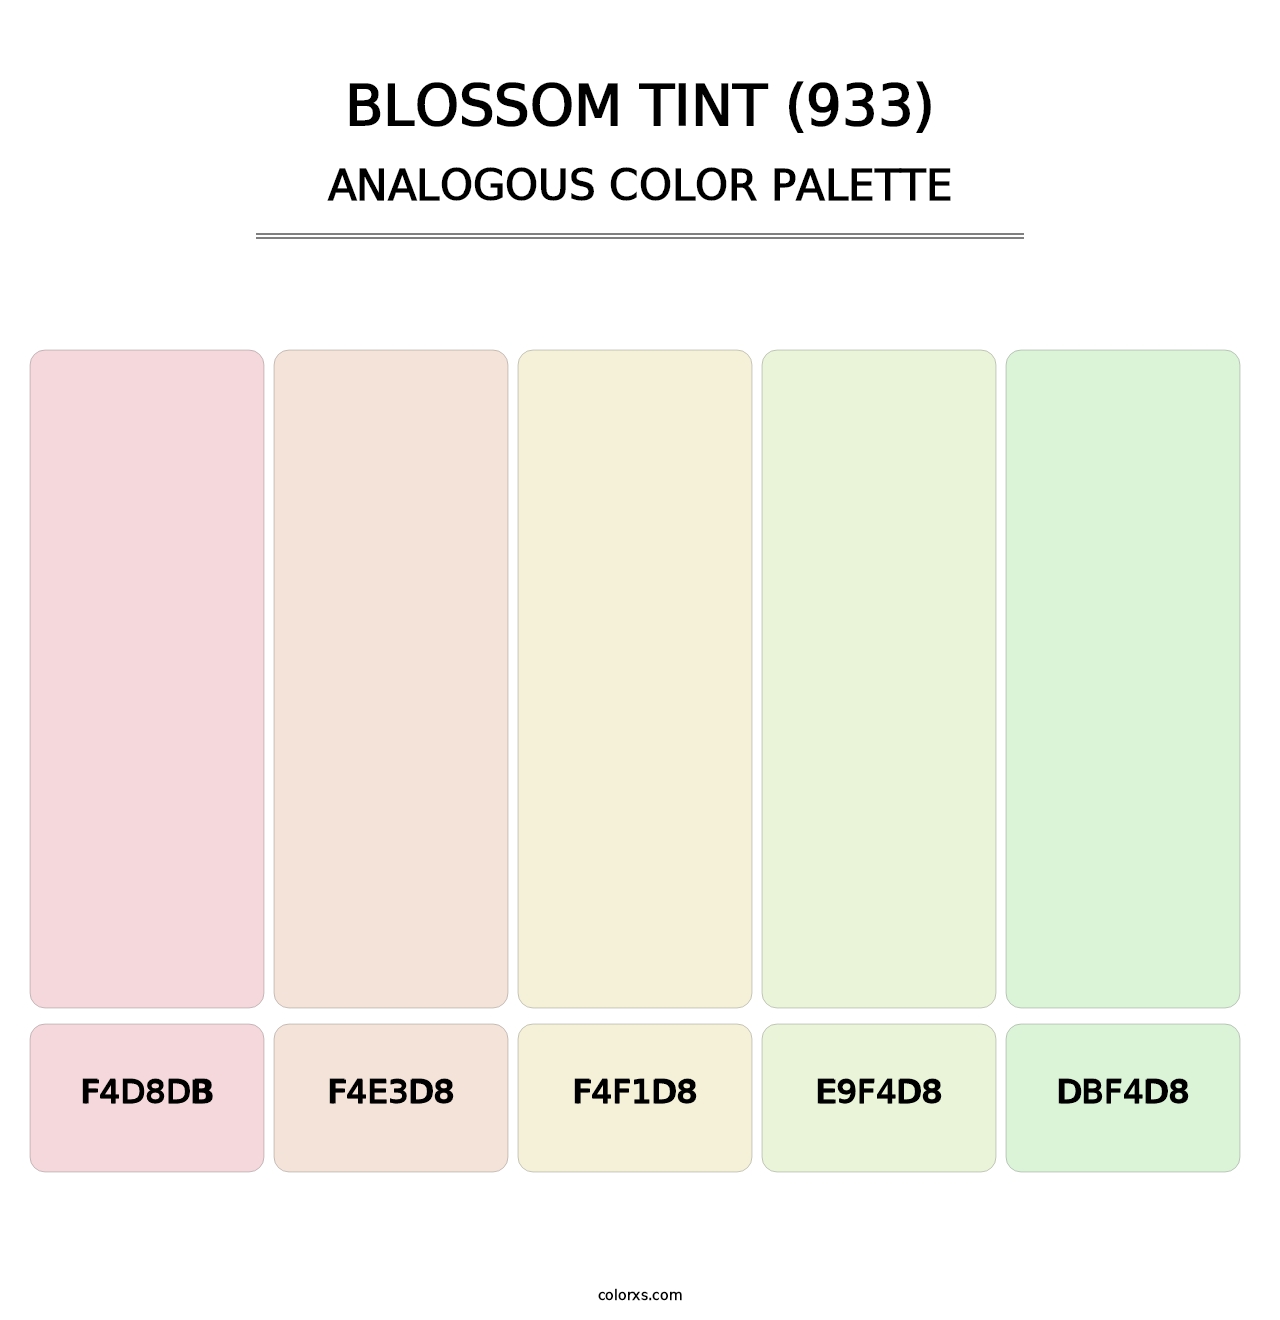 Blossom Tint (933) - Analogous Color Palette